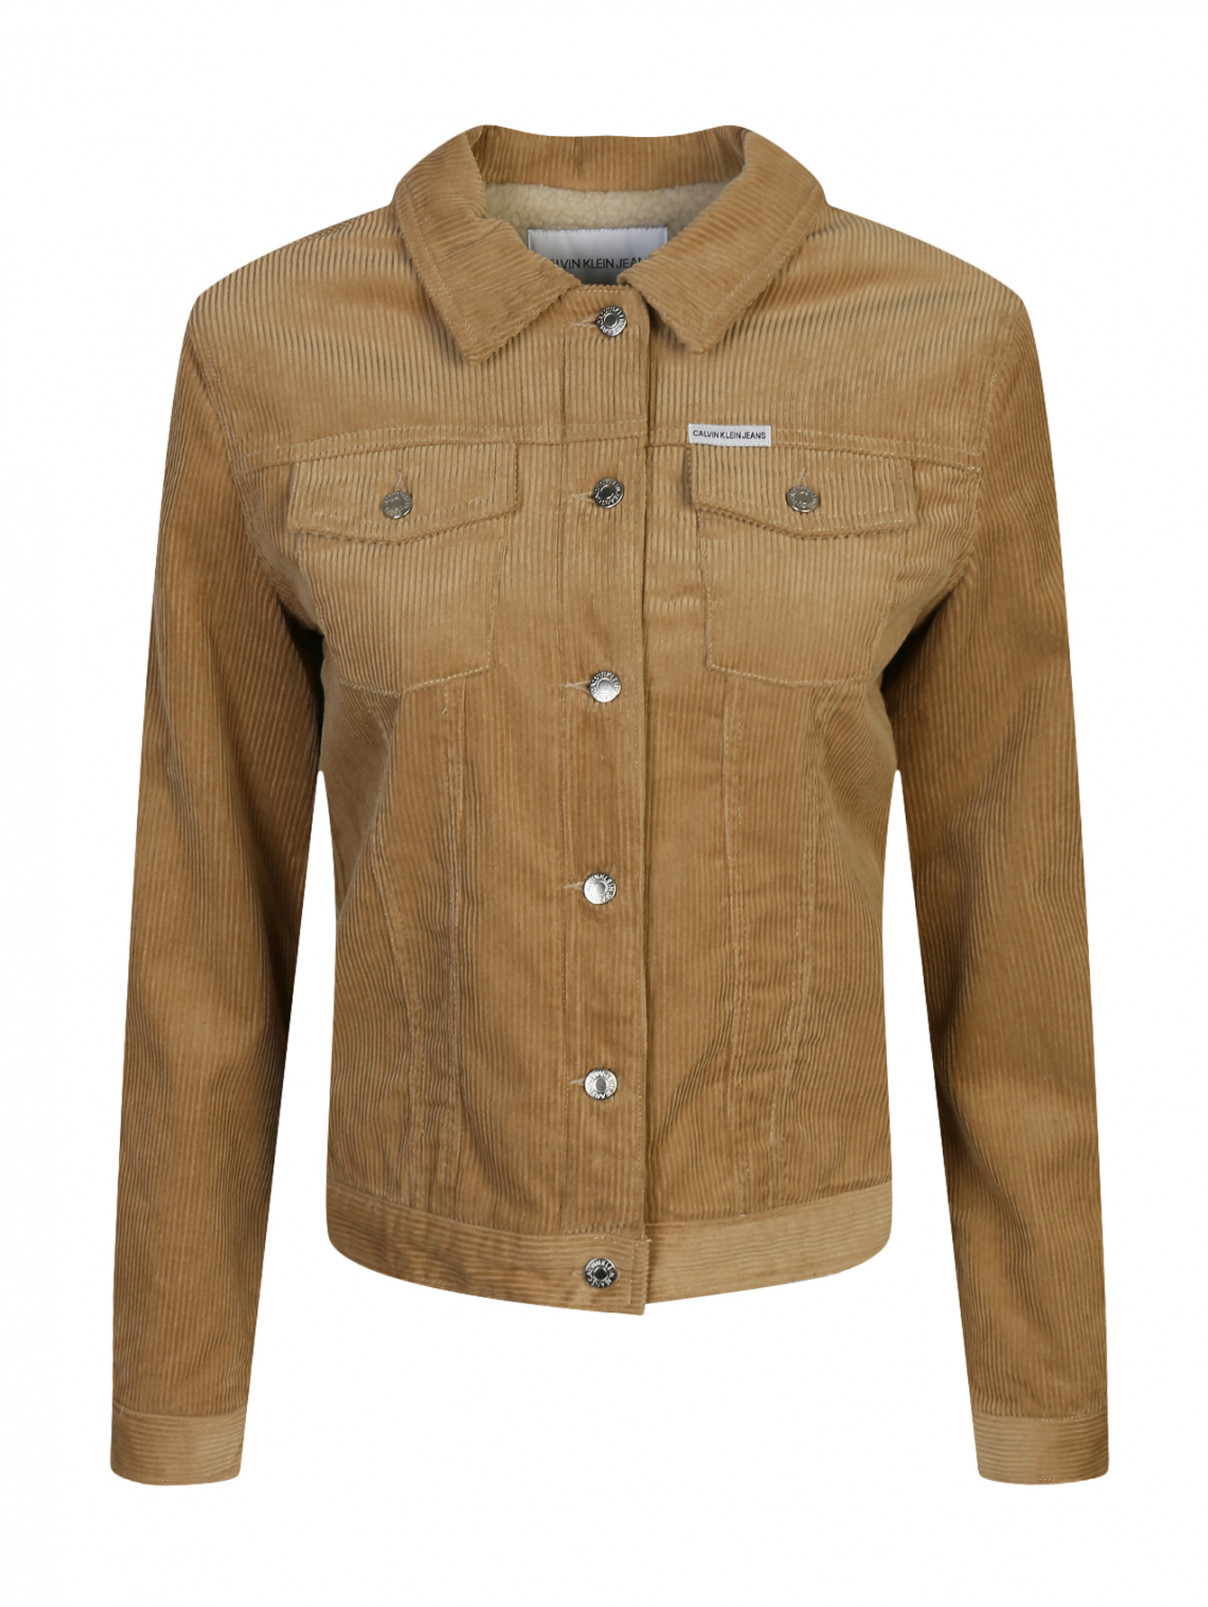 Вельветовая куртка с накладными карманами Calvin Klein  –  Общий вид  – Цвет:  Бежевый